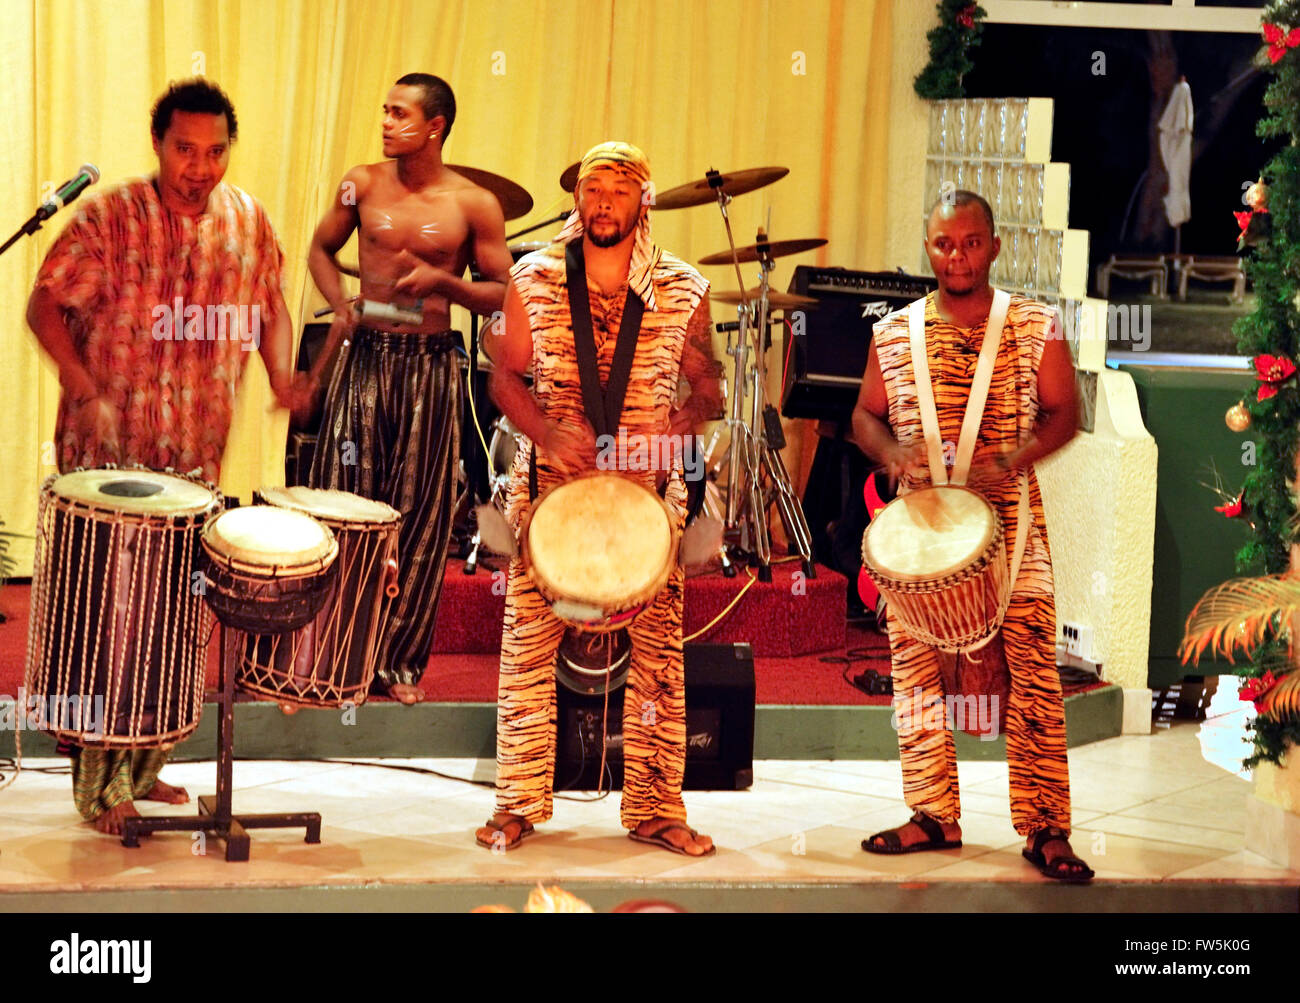 Batteristi sega a Maurizio night club, giocando djumbe / djembe tamburi da sud-ovest Africa: dununba (grande tamburo); sangban (media del tamburo); kenken, anche tambour (piccolo tamburo). Sega è la nazionale di canti e danze di Maurizio, estremamente versatile. Accompagnata da strumenti distinti che forniscono soltanto un ritmo senza melodia, come ravane (un sottile, ampia tamburo di pelle di capra), il maravane (ciottoli-riempito la casella stridio quando scosso) e il triangolo, la cantante canta le tribolazioni di amore o il lato divertente della vita. Foto Stock